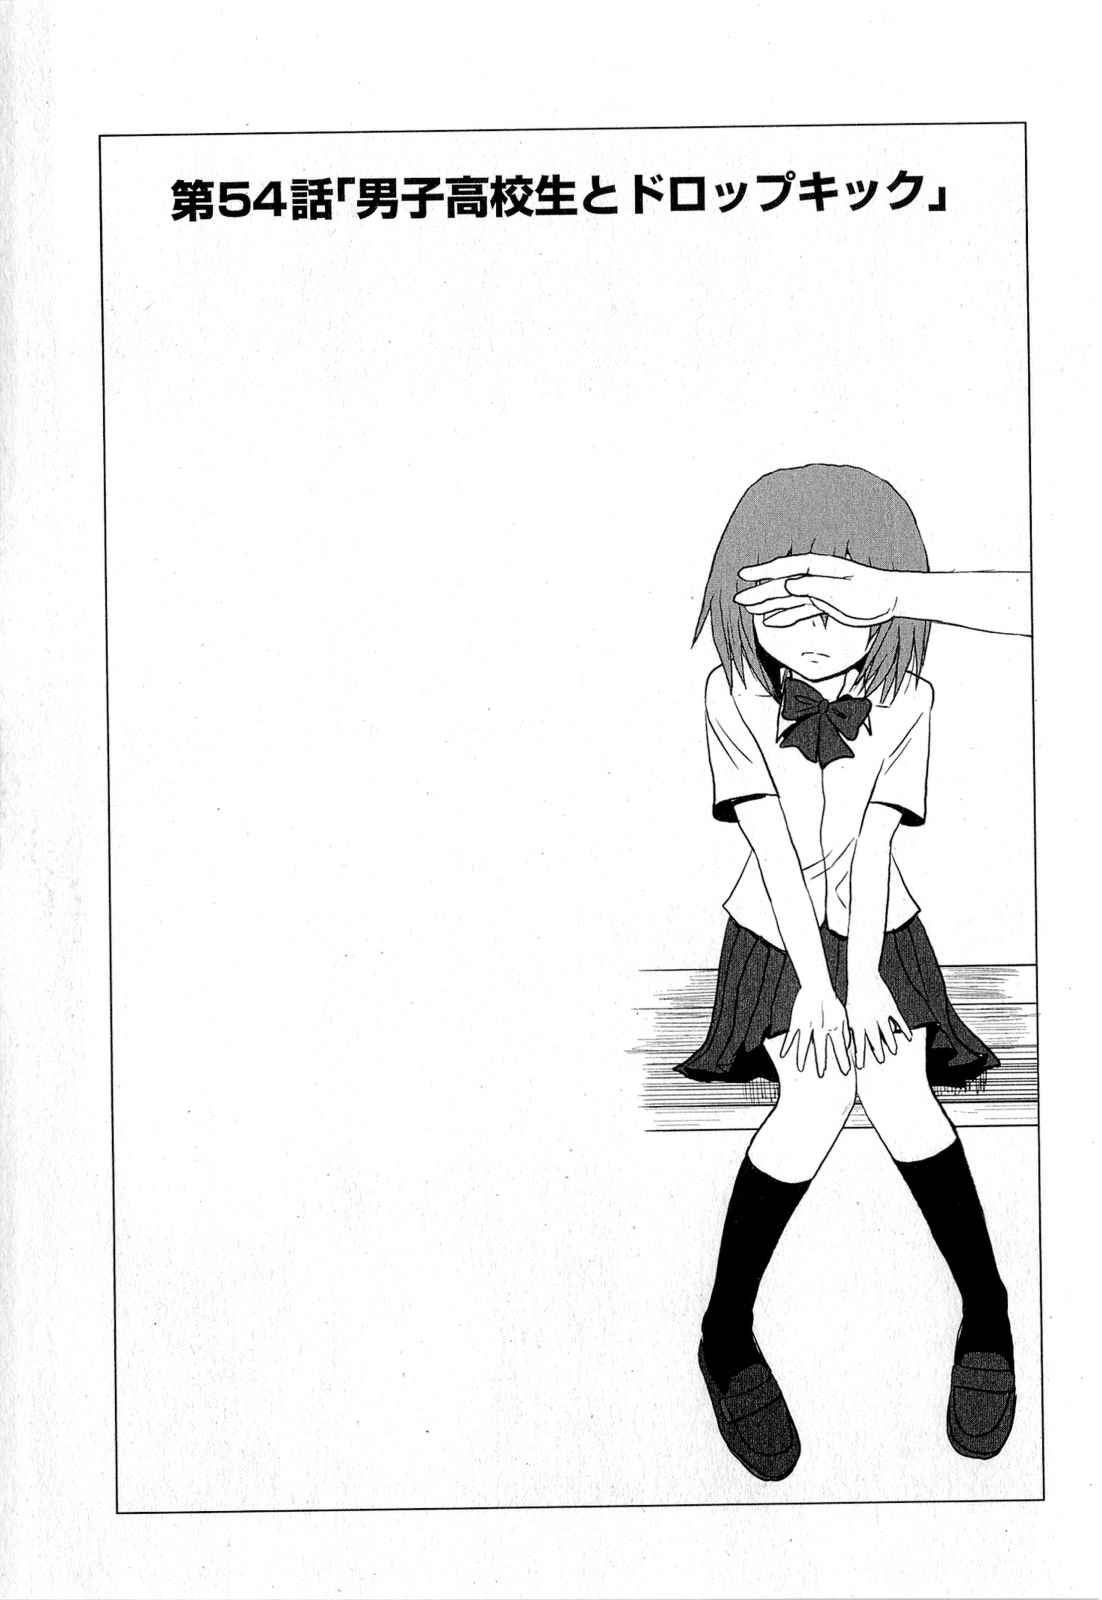 Danshi Koukousei no Nichijou Vol. 4 Ch. 54 High School Boys And Dropkick